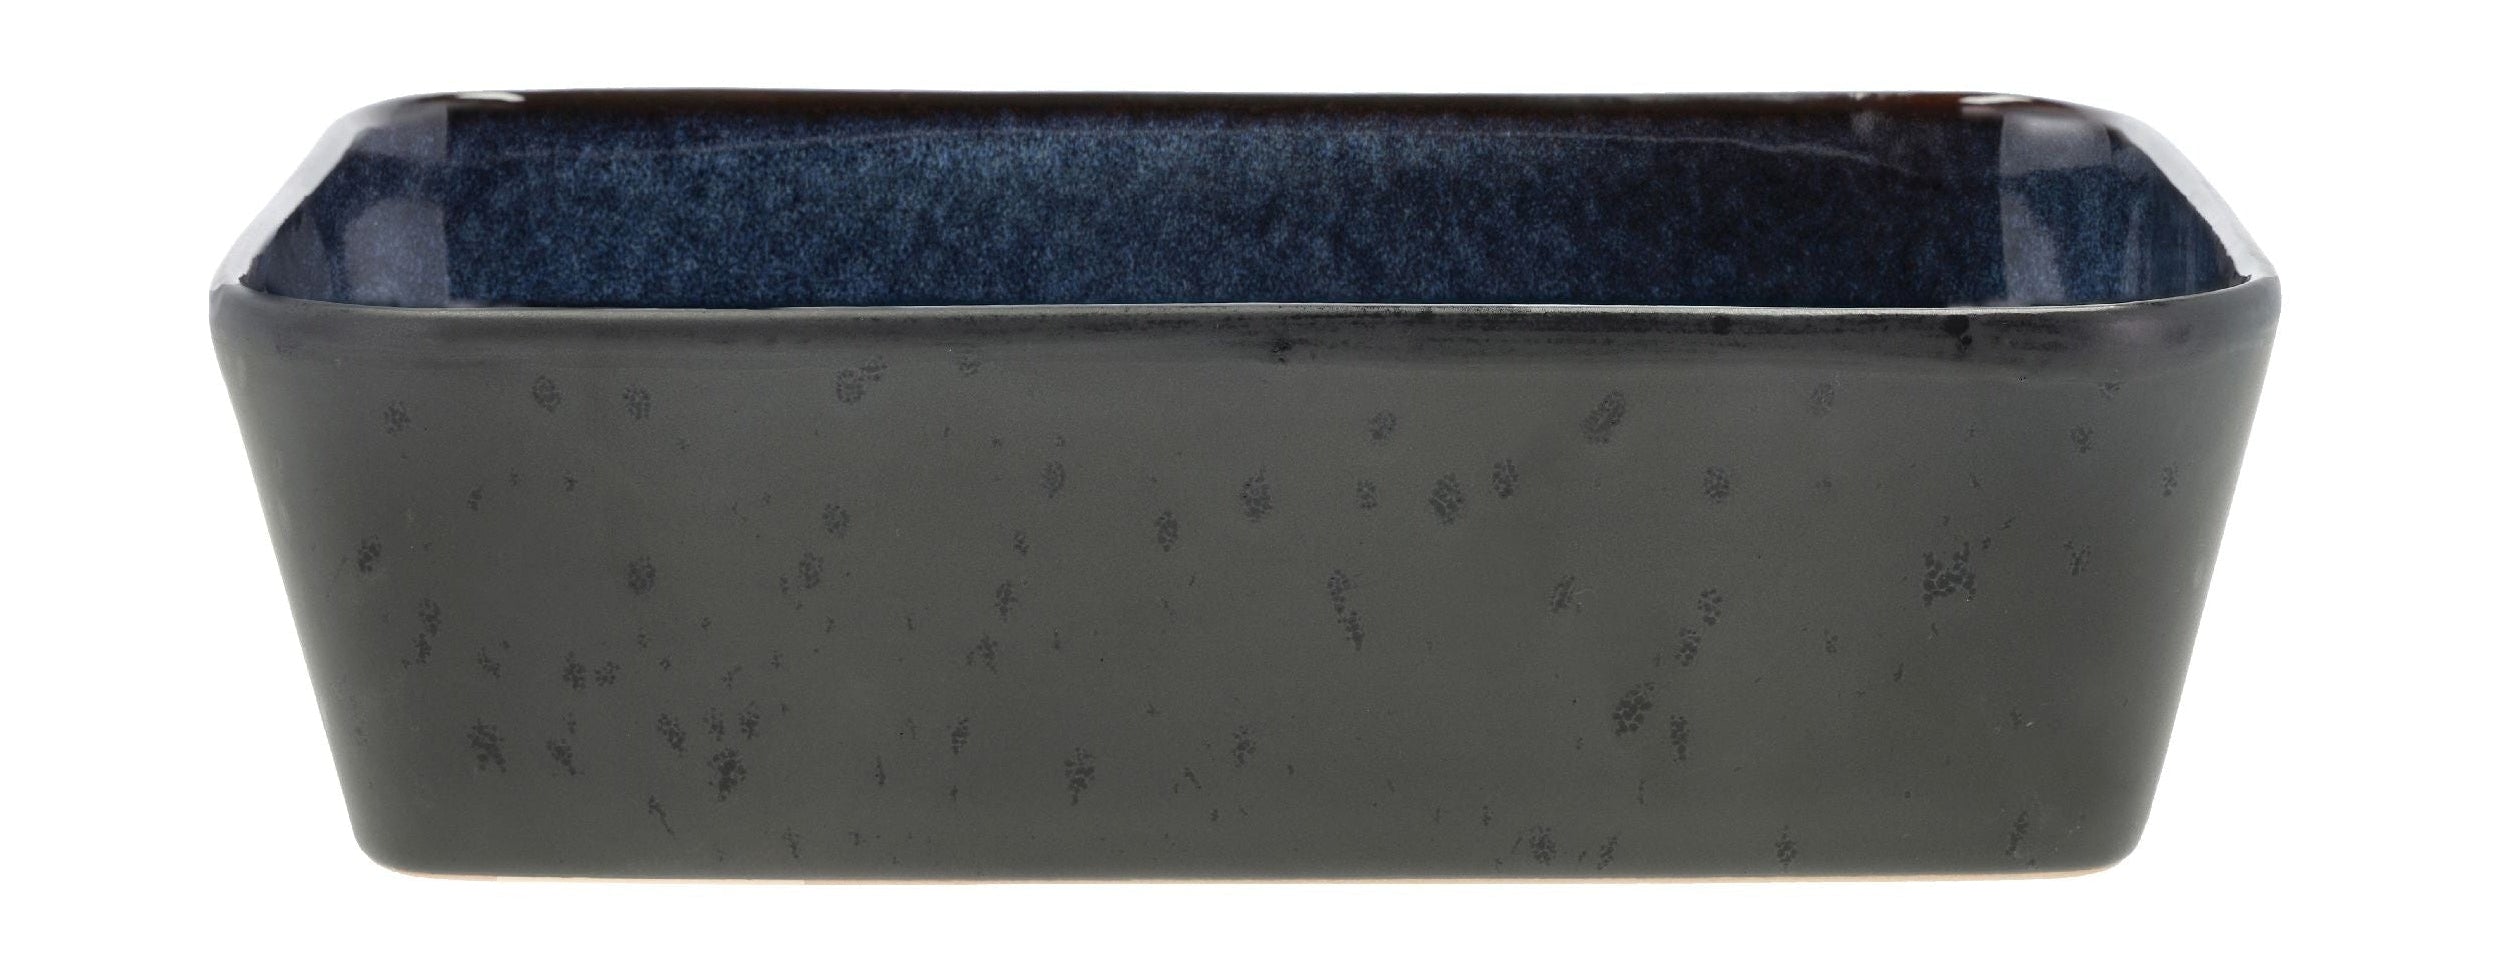 Bitz skål rektangulär 28 x 21 x 8 cm, svart/blå